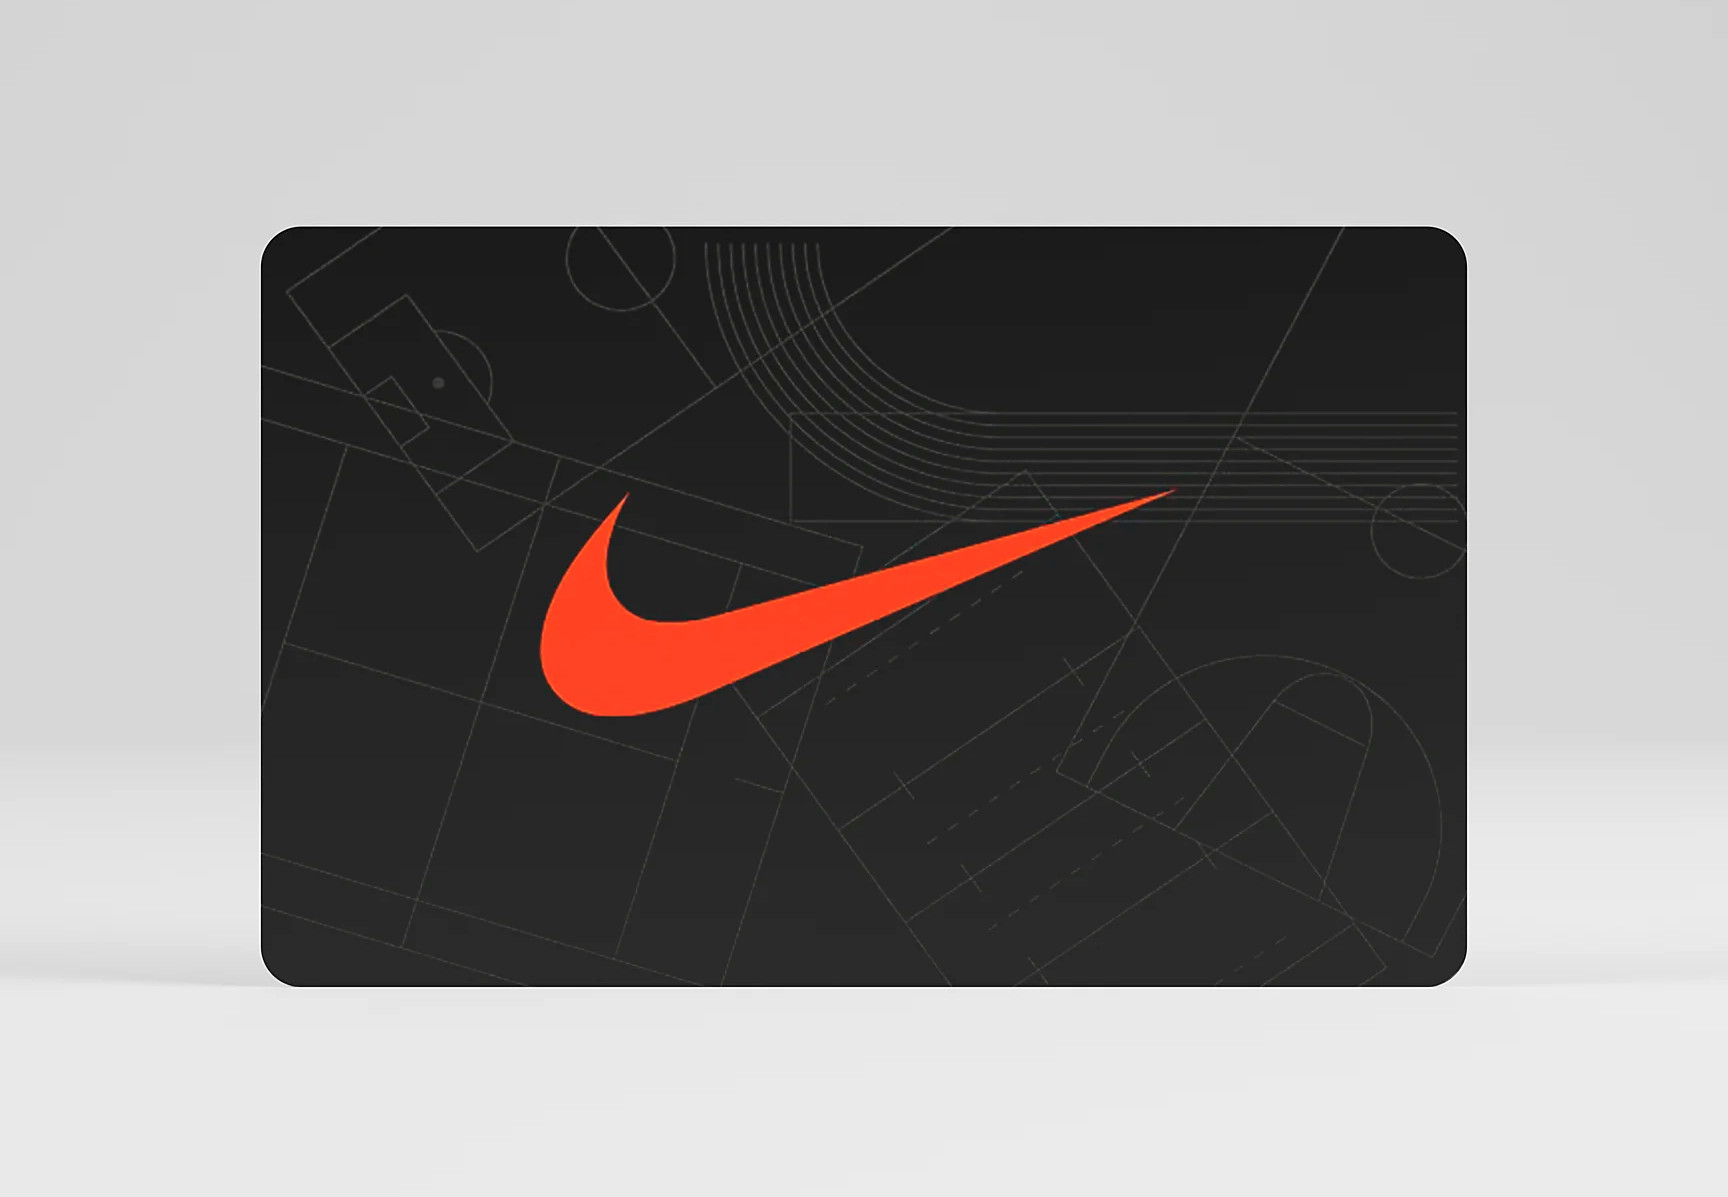 Nike €5 Gift Card DE